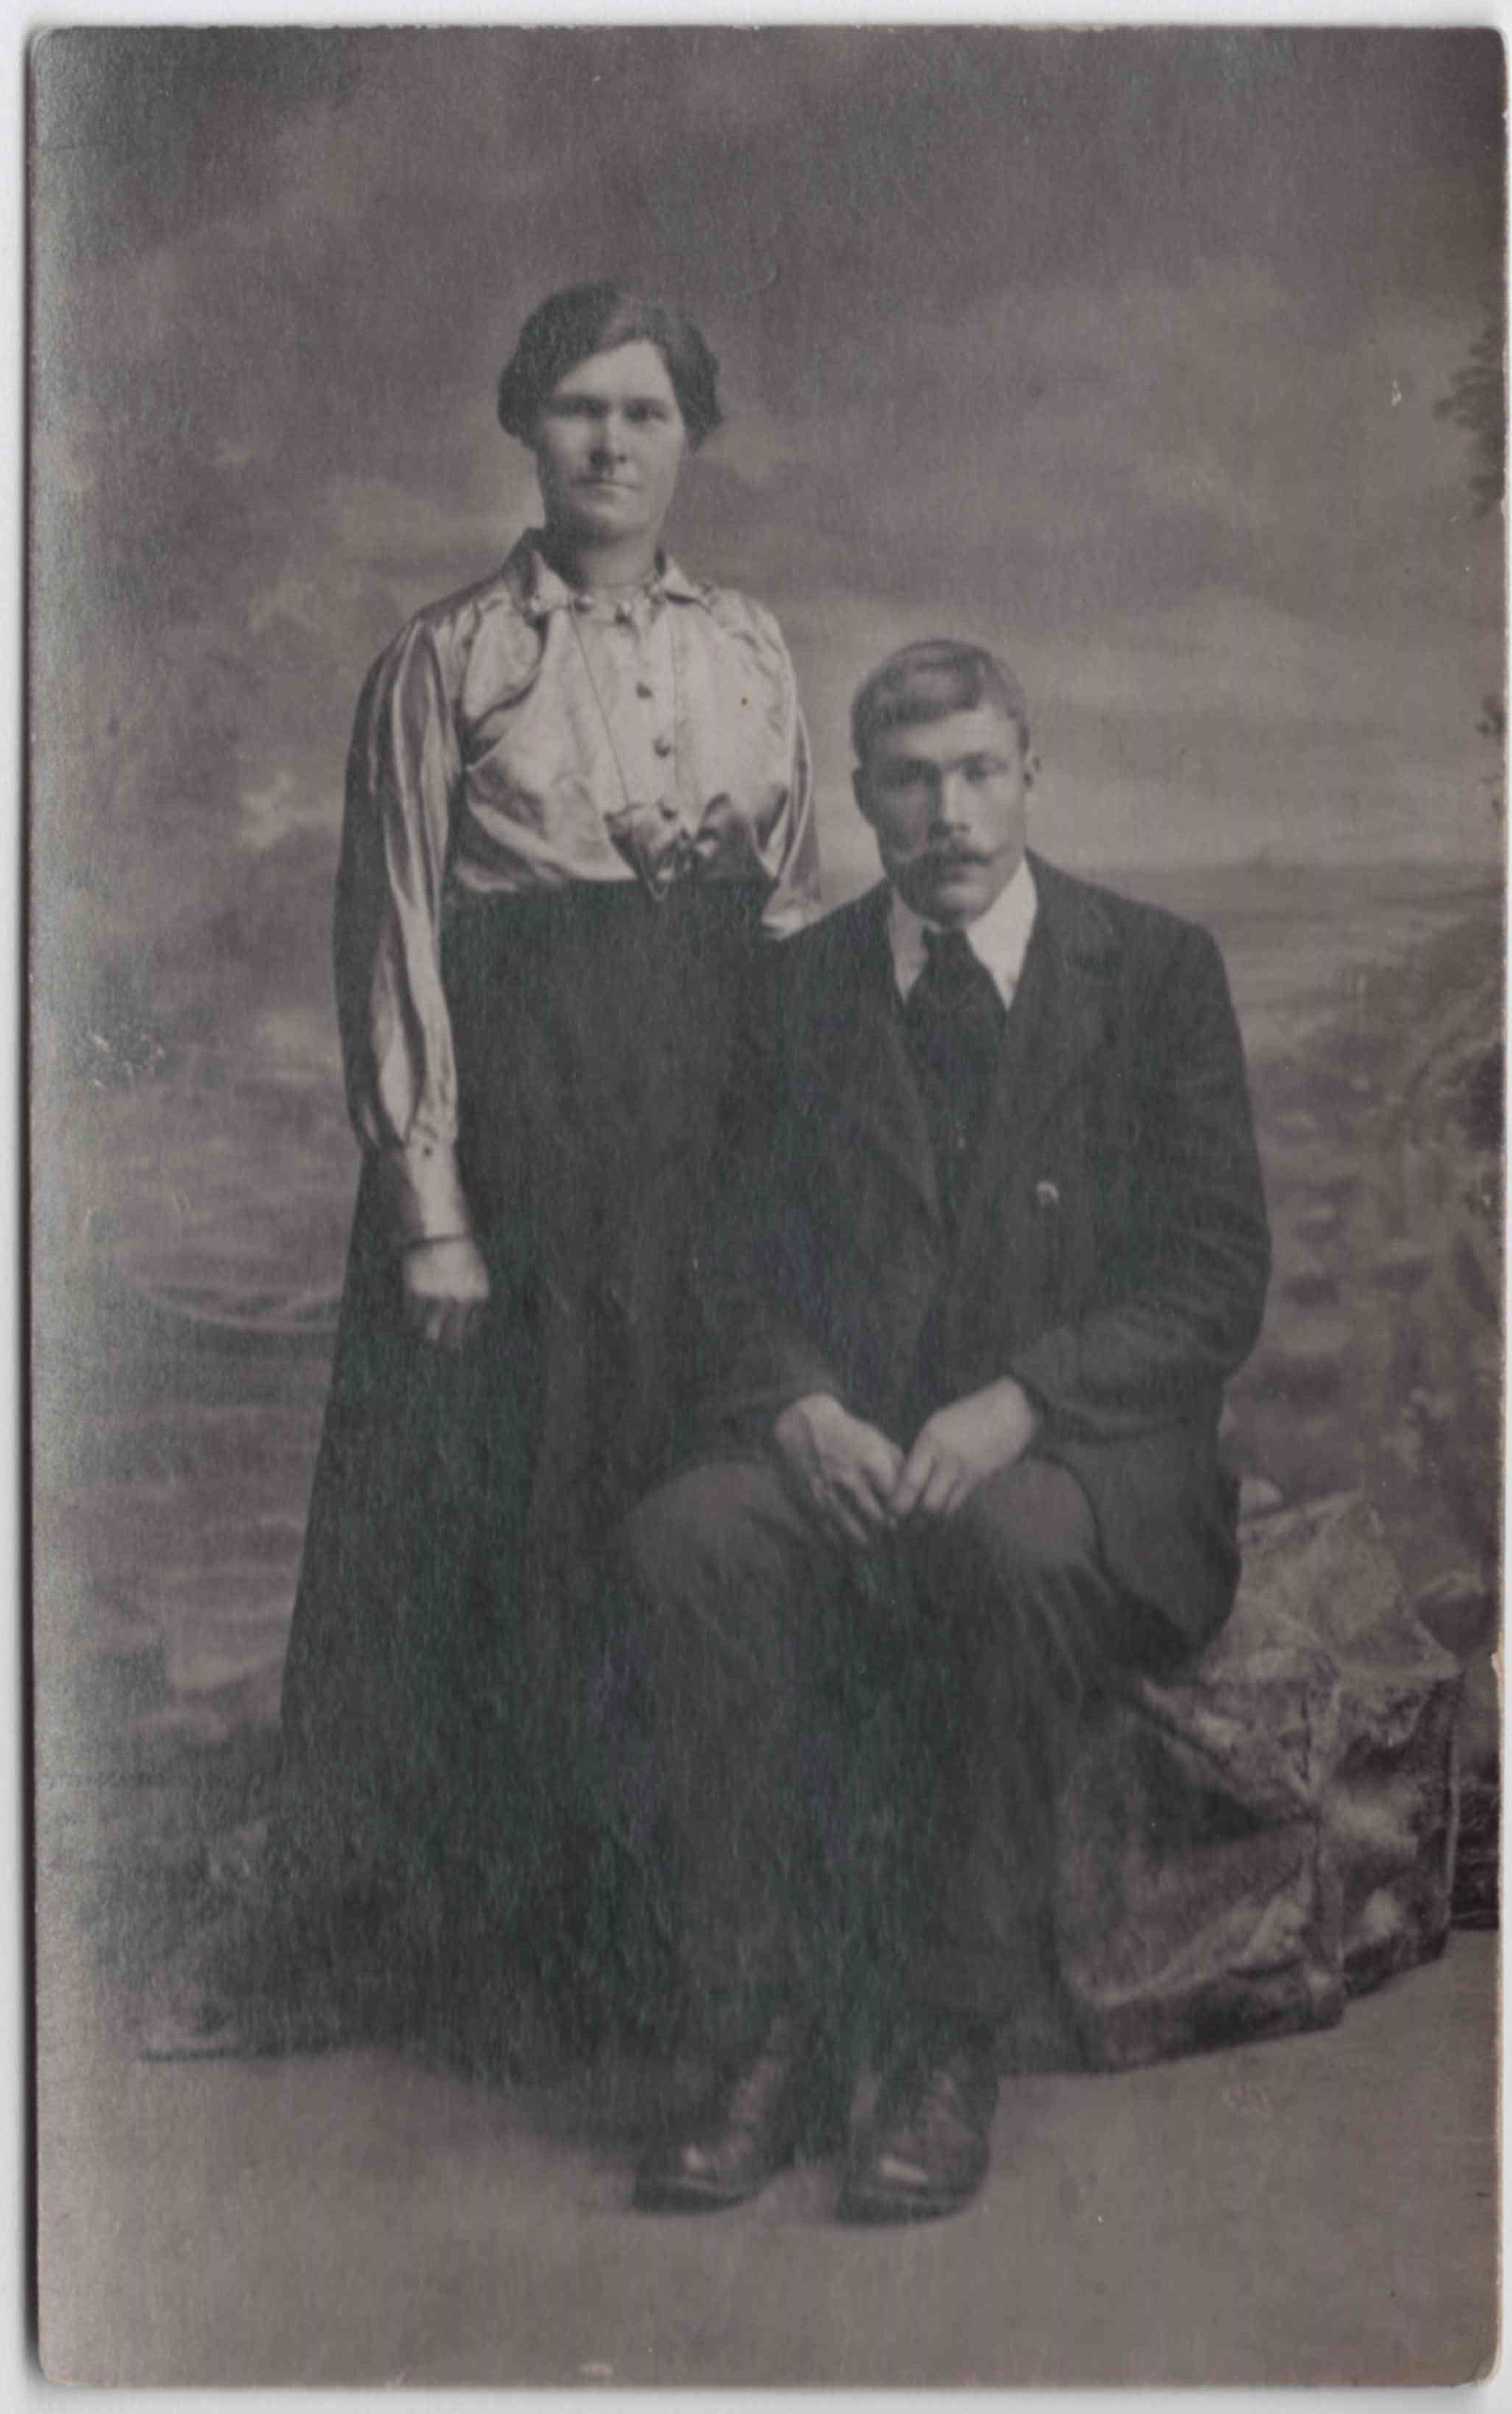 Raivo Liblik's grandfather John Liblik and grandmother Leena Liblik